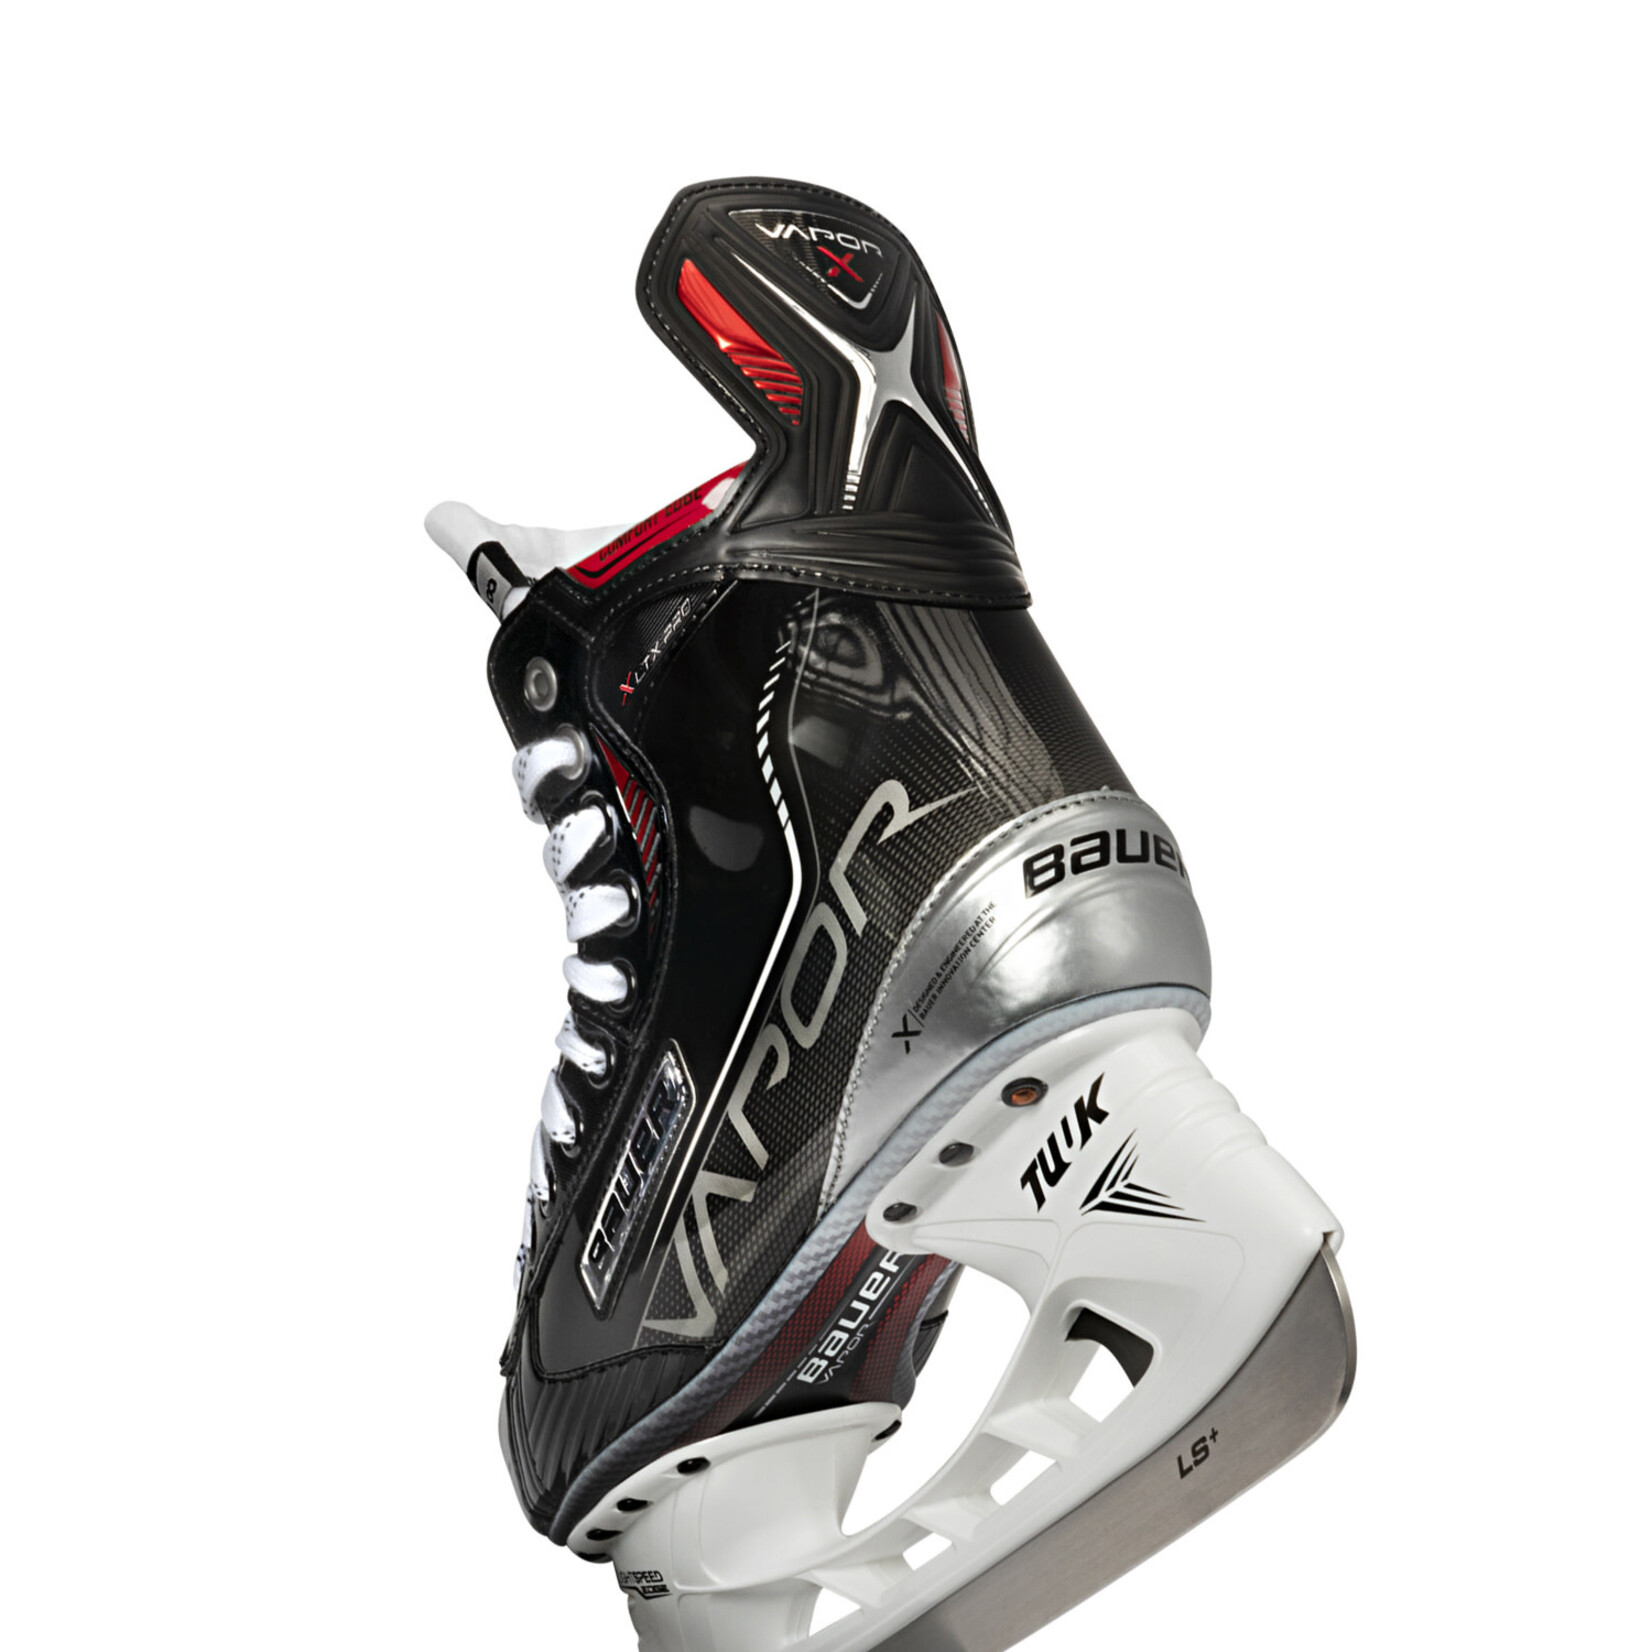 Bauer Bauer Hockey Skates, Vapor XLTX Pro, Intermediate